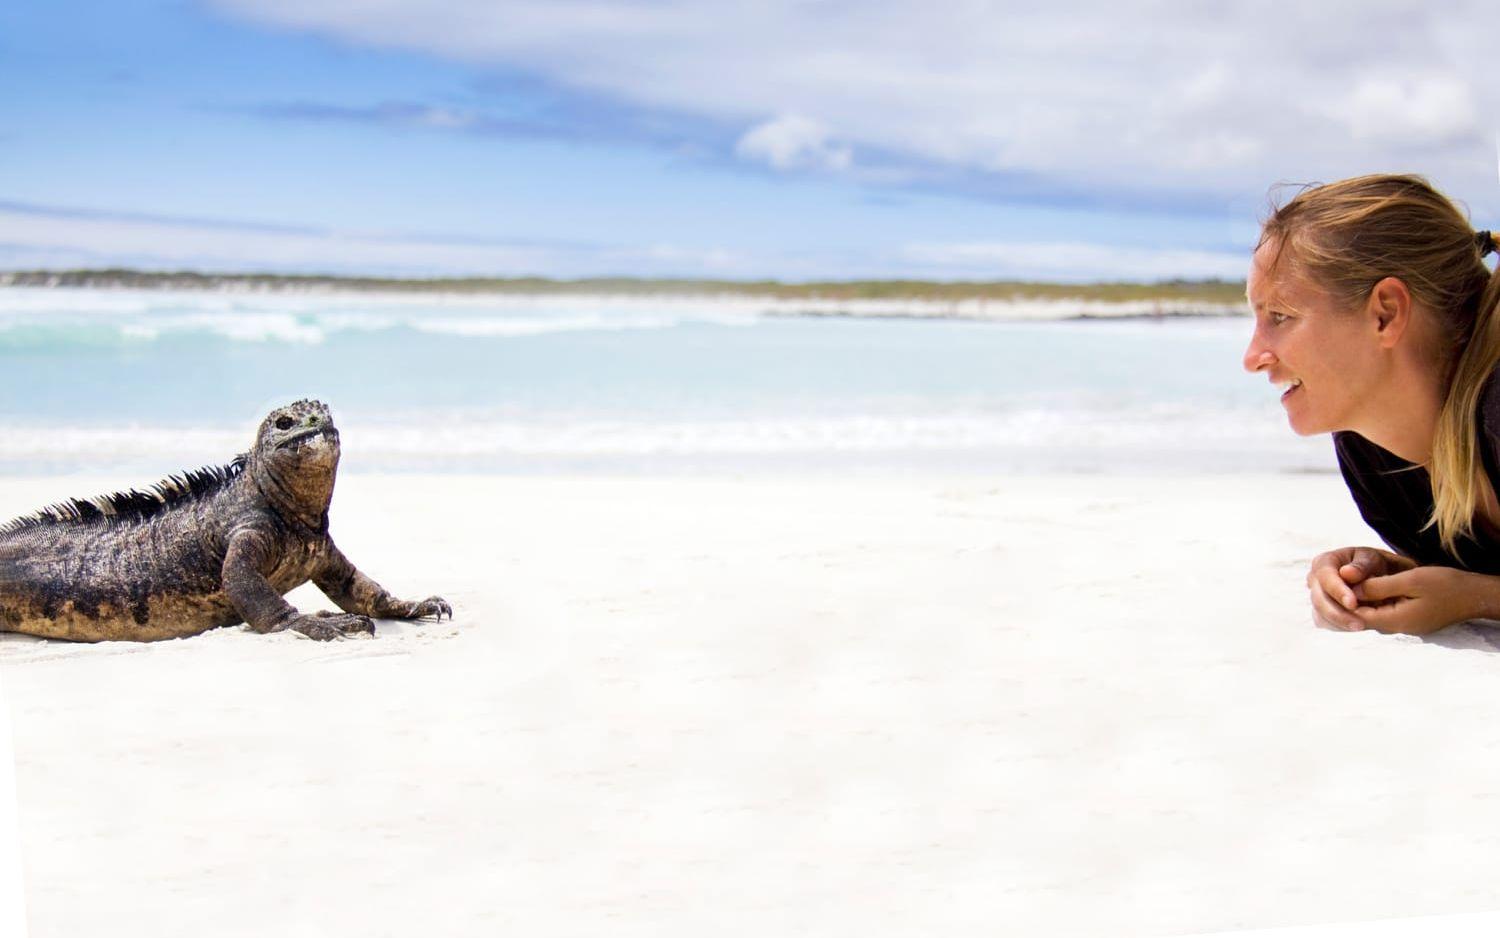 Hanna fick uppleva naturen på nära håll under resan, bland annat på Galápagosöarna utanför Ecuador. Bild: Hanna Mi Jakobson